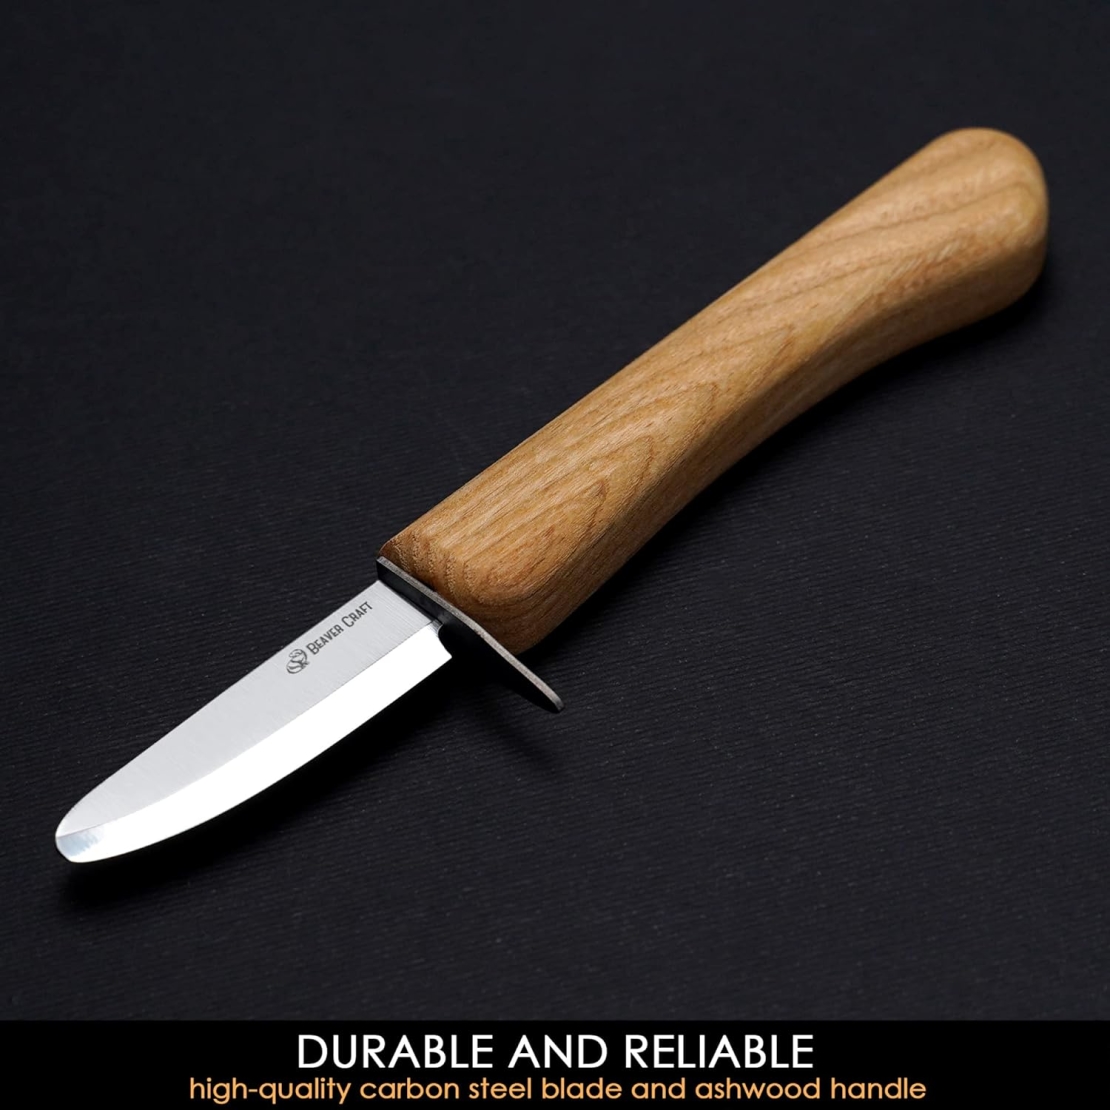 סכין גילוף בטוחה לילדים עם נדן עור TOOLEDEN BEAVERCRAFT C1KID